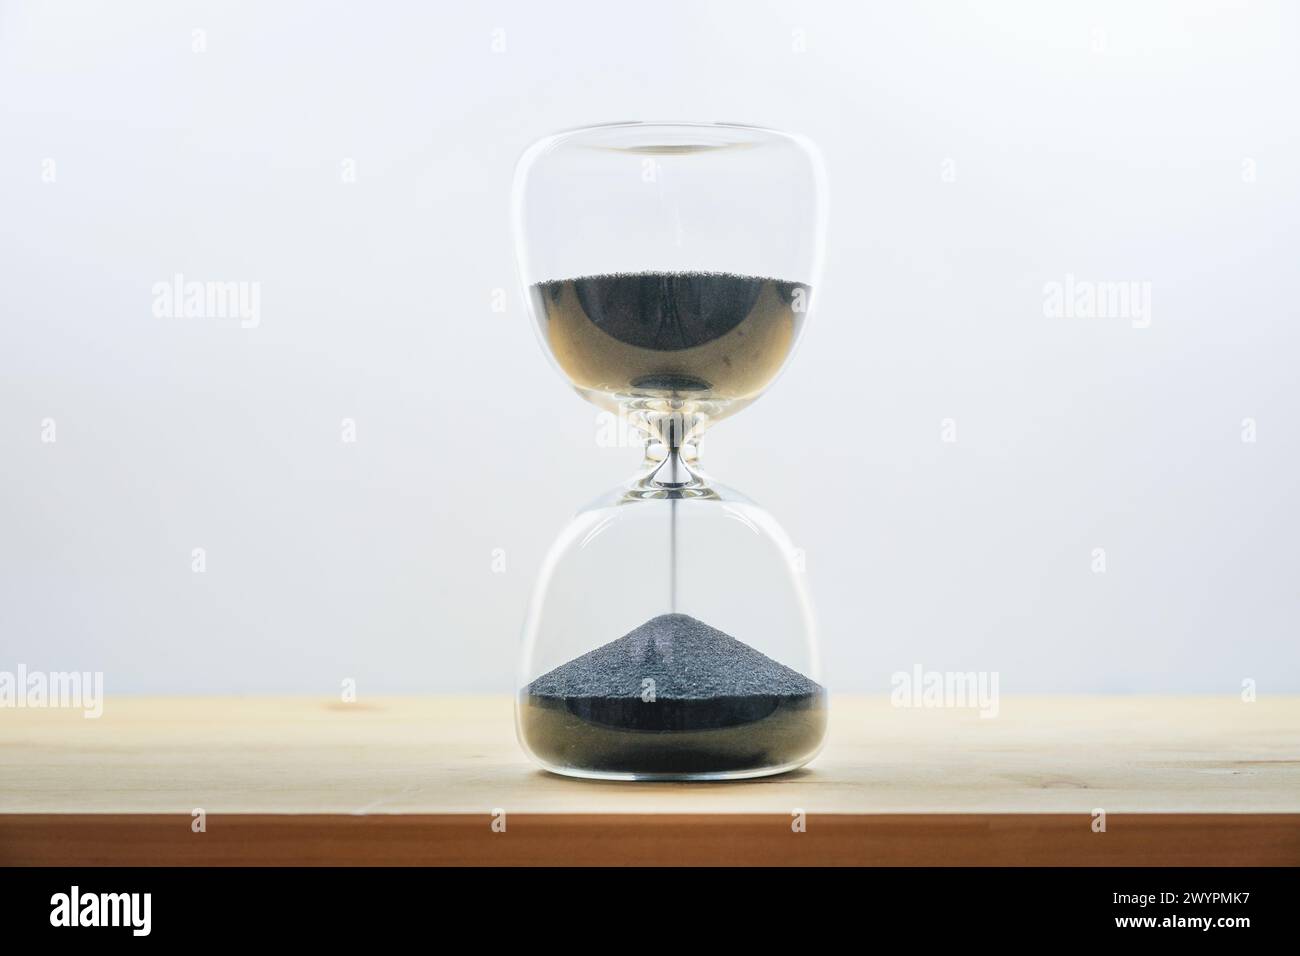 Sanduhr mit schwarzem Sand auf einem Holztisch vor einem hellgrauen Hintergrund, Konzept für die Zeit im Vergehen, ergreifen Sie den Tag und genießen Sie den Moment, kopieren Sie Spa Stockfoto